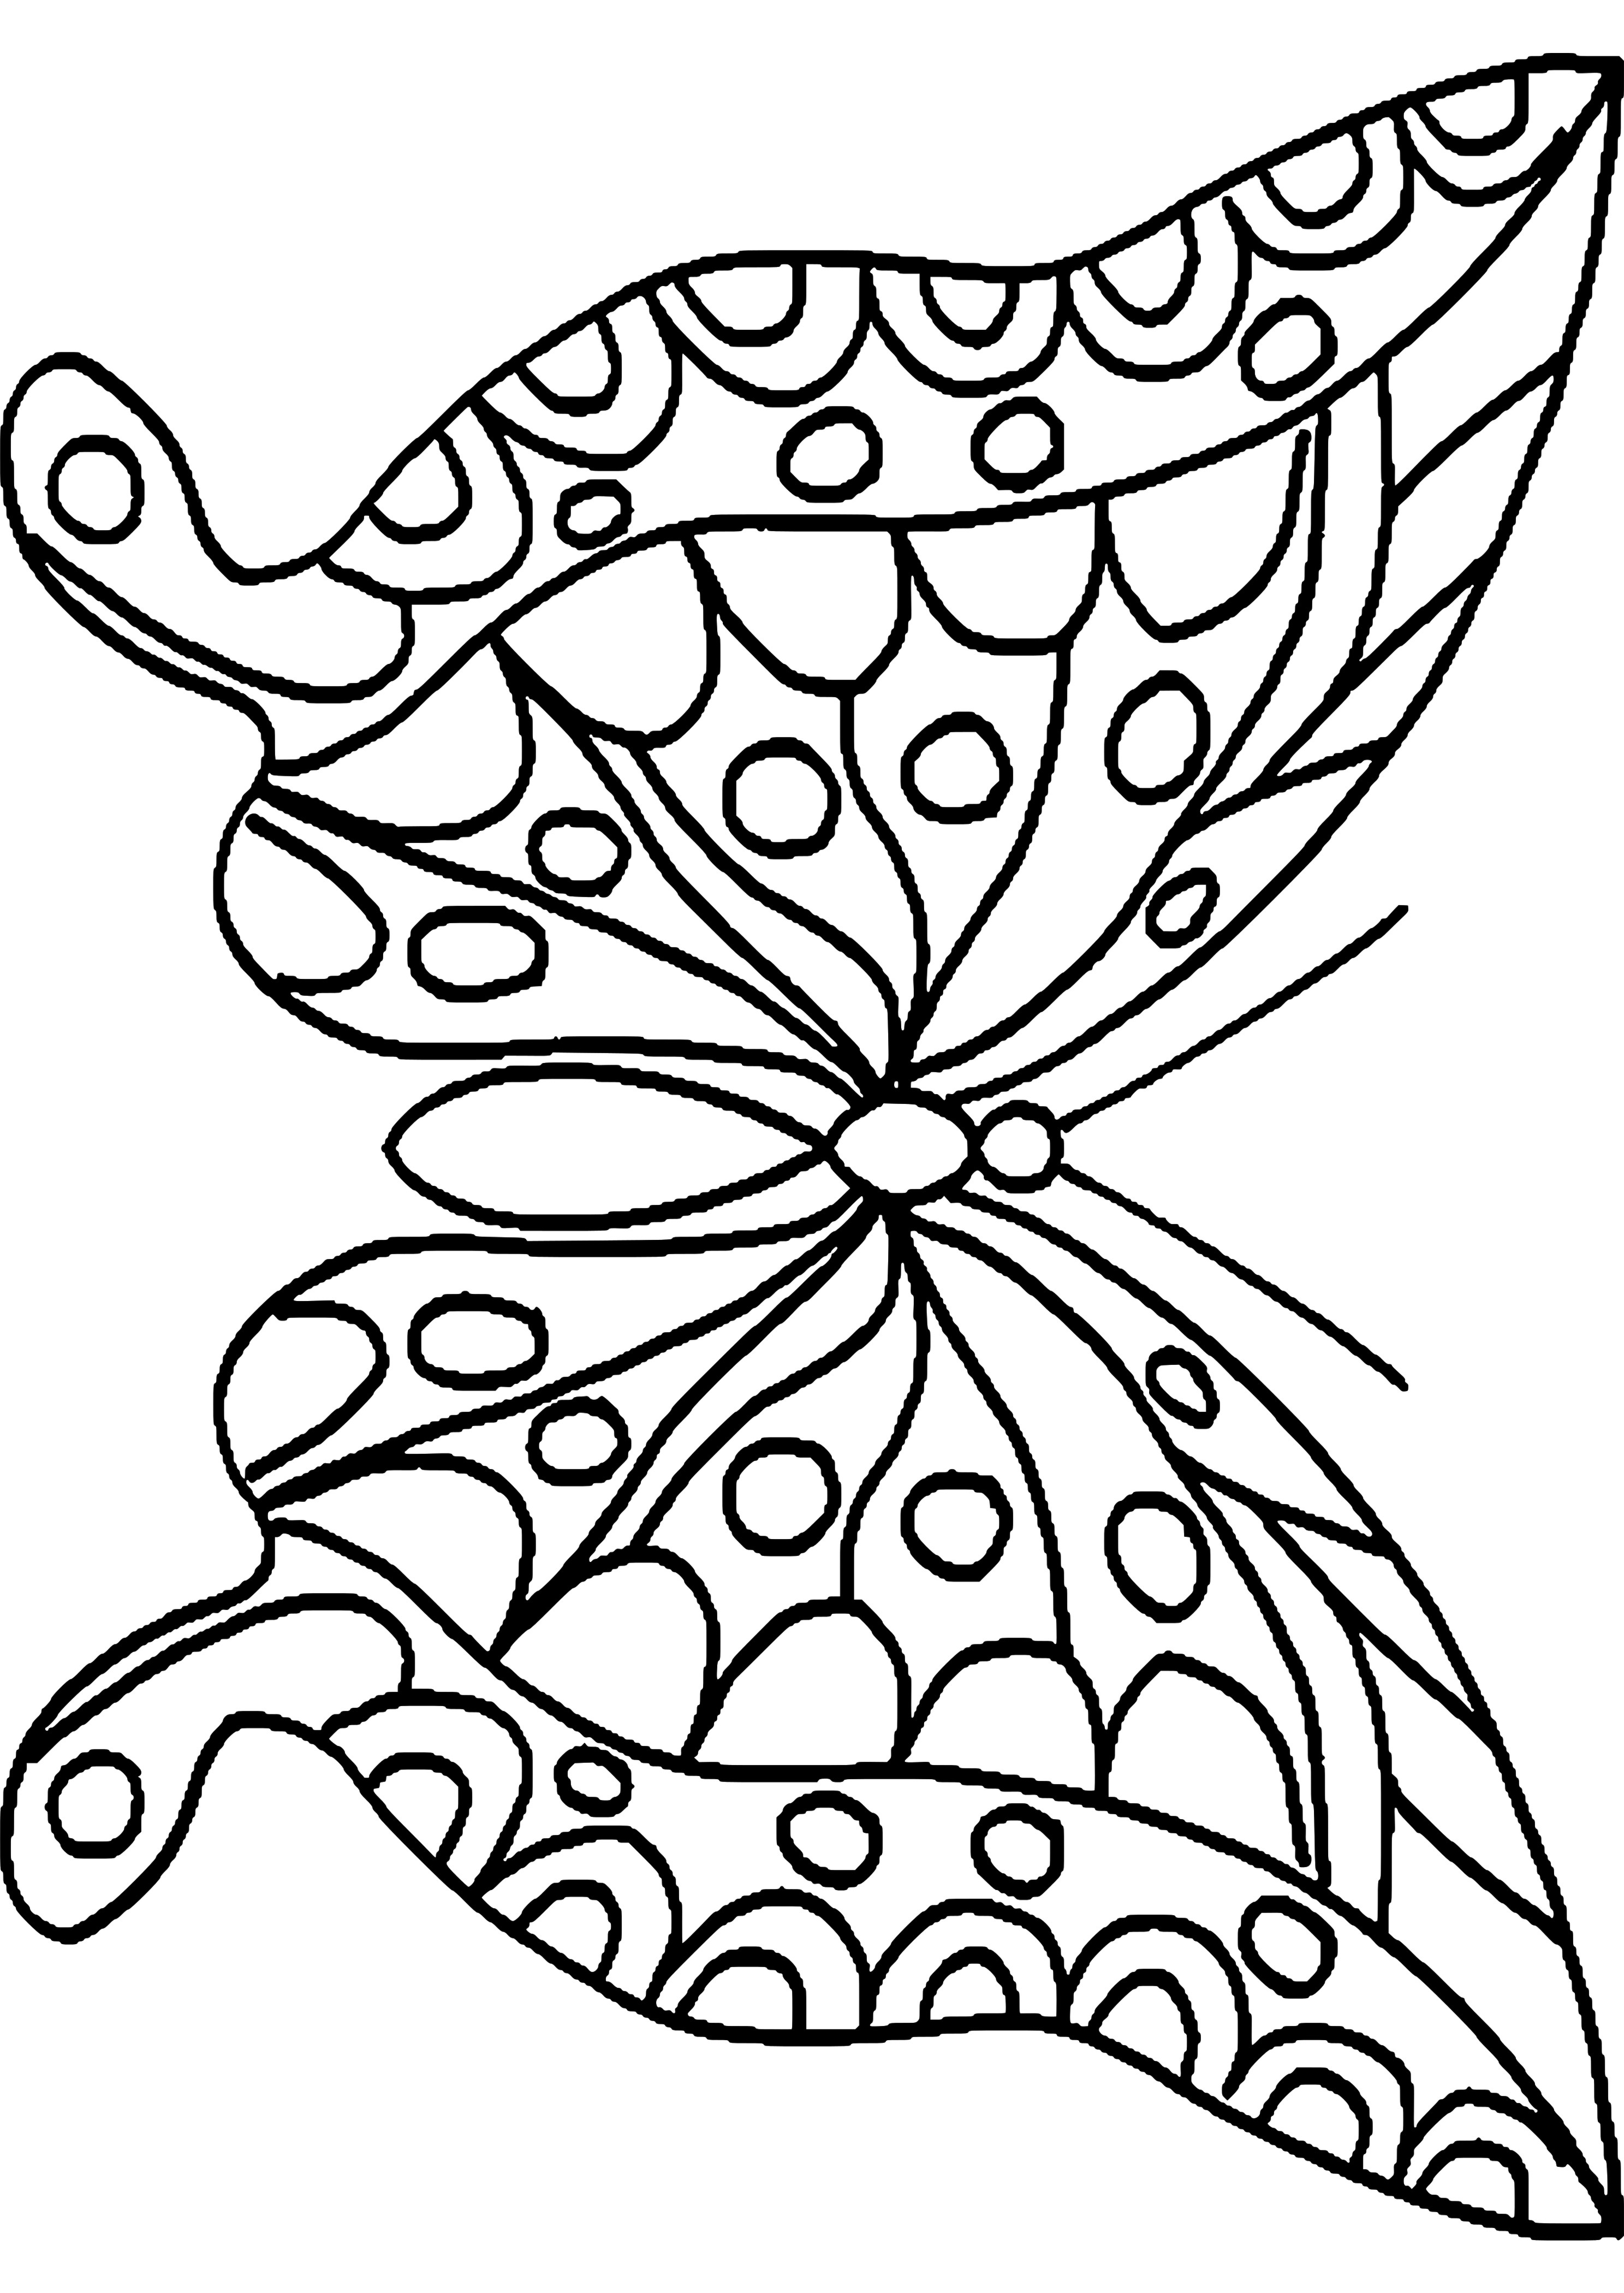 Ausmalbilder Schmetterling Mandala
 Ausmalbilder Kostenlos Ausdrucken Schmetterling